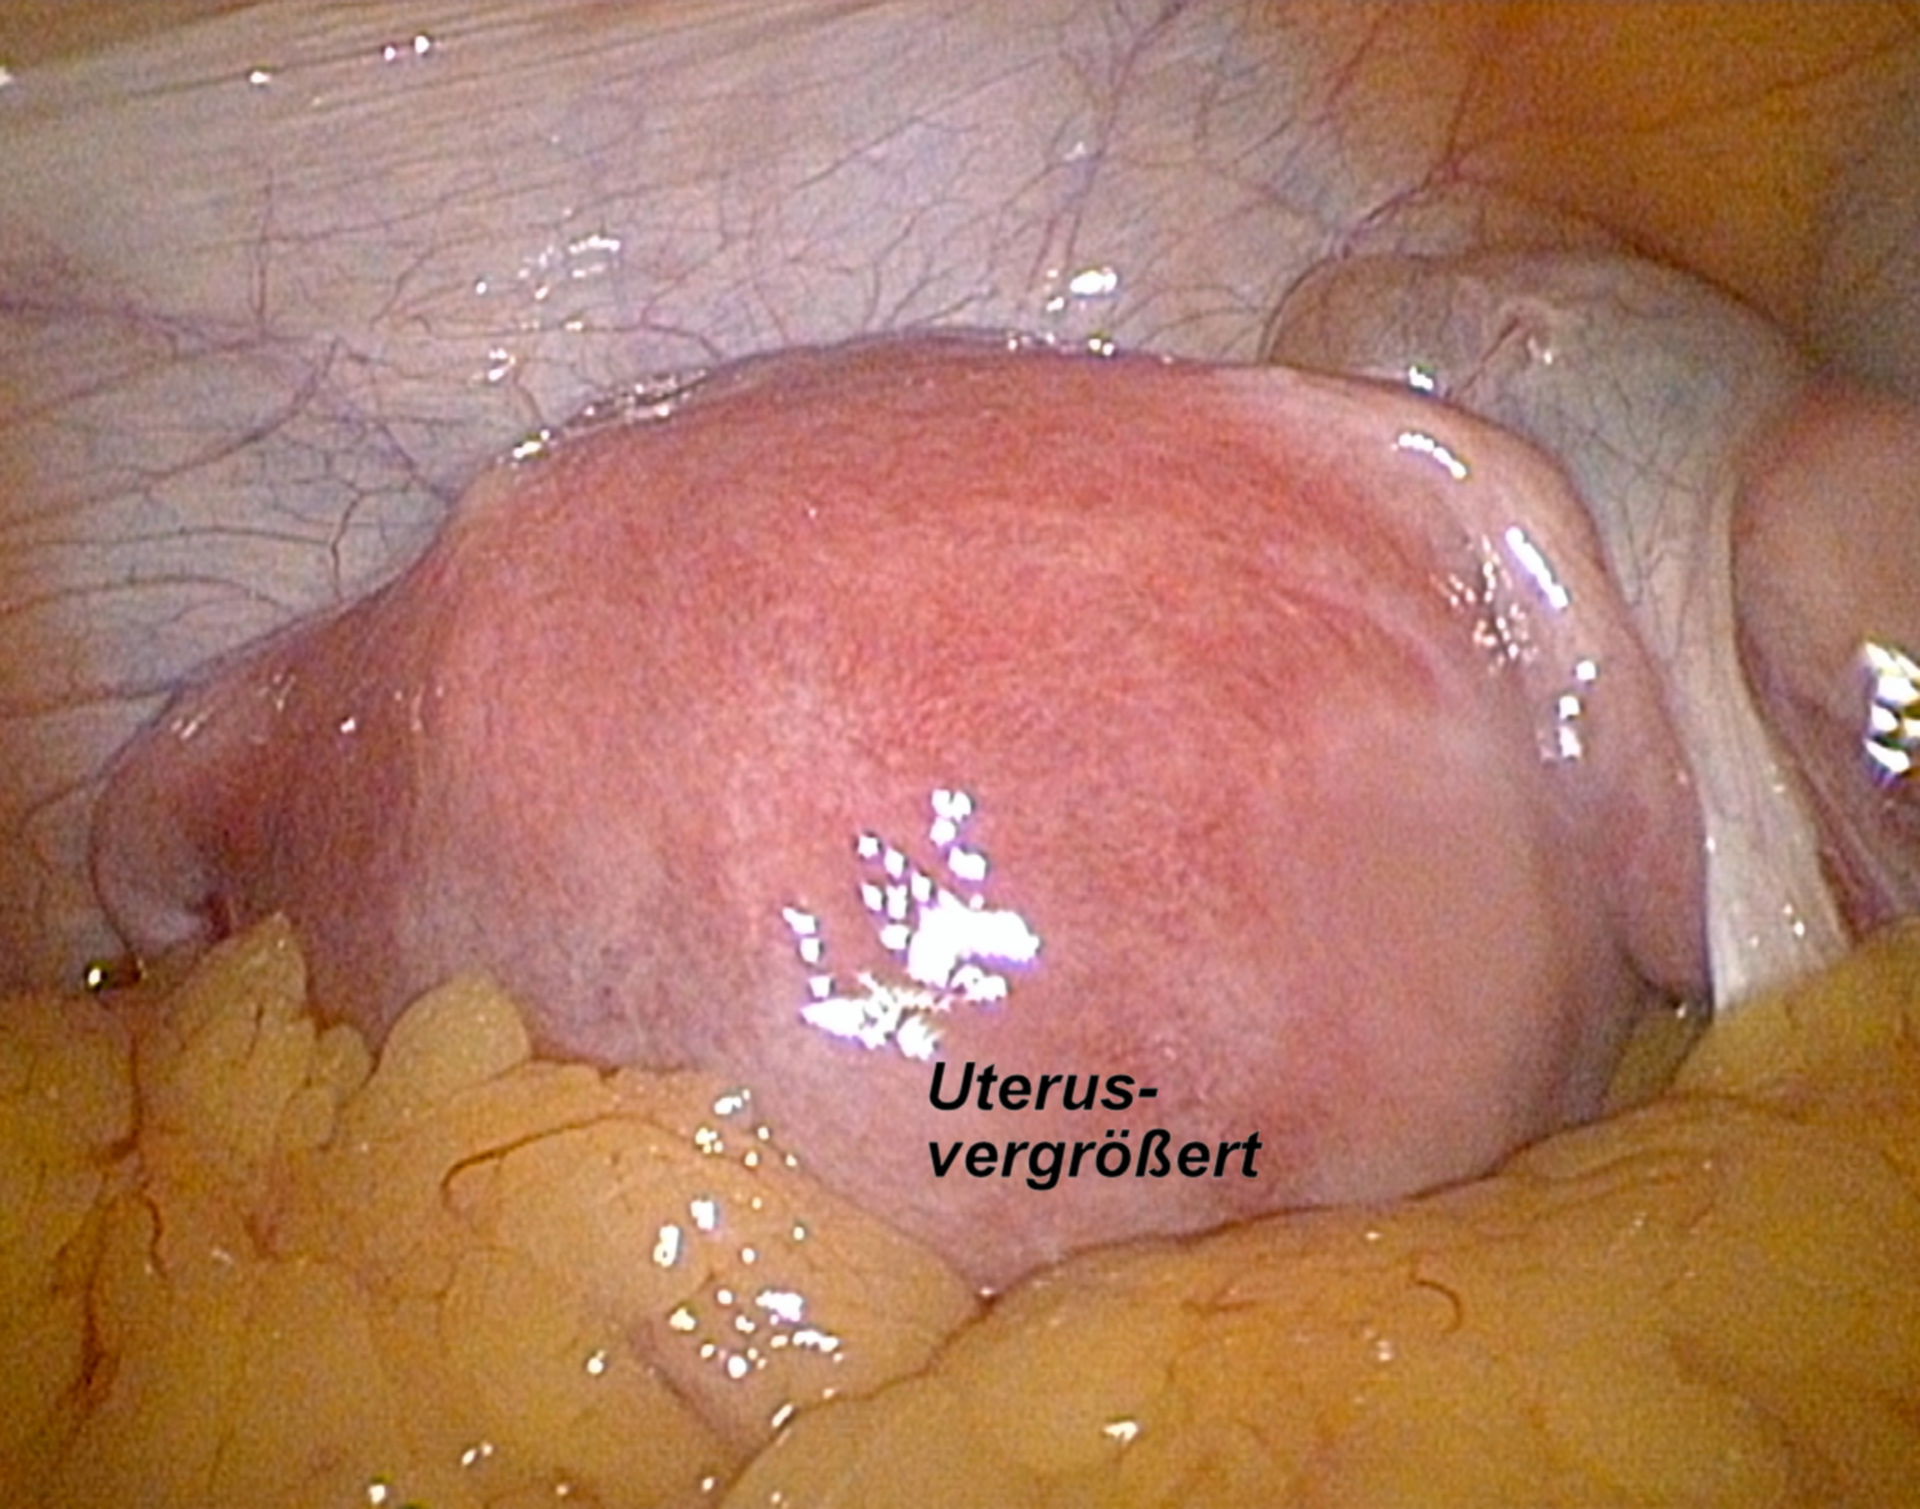 Laparoskopie - Uterus